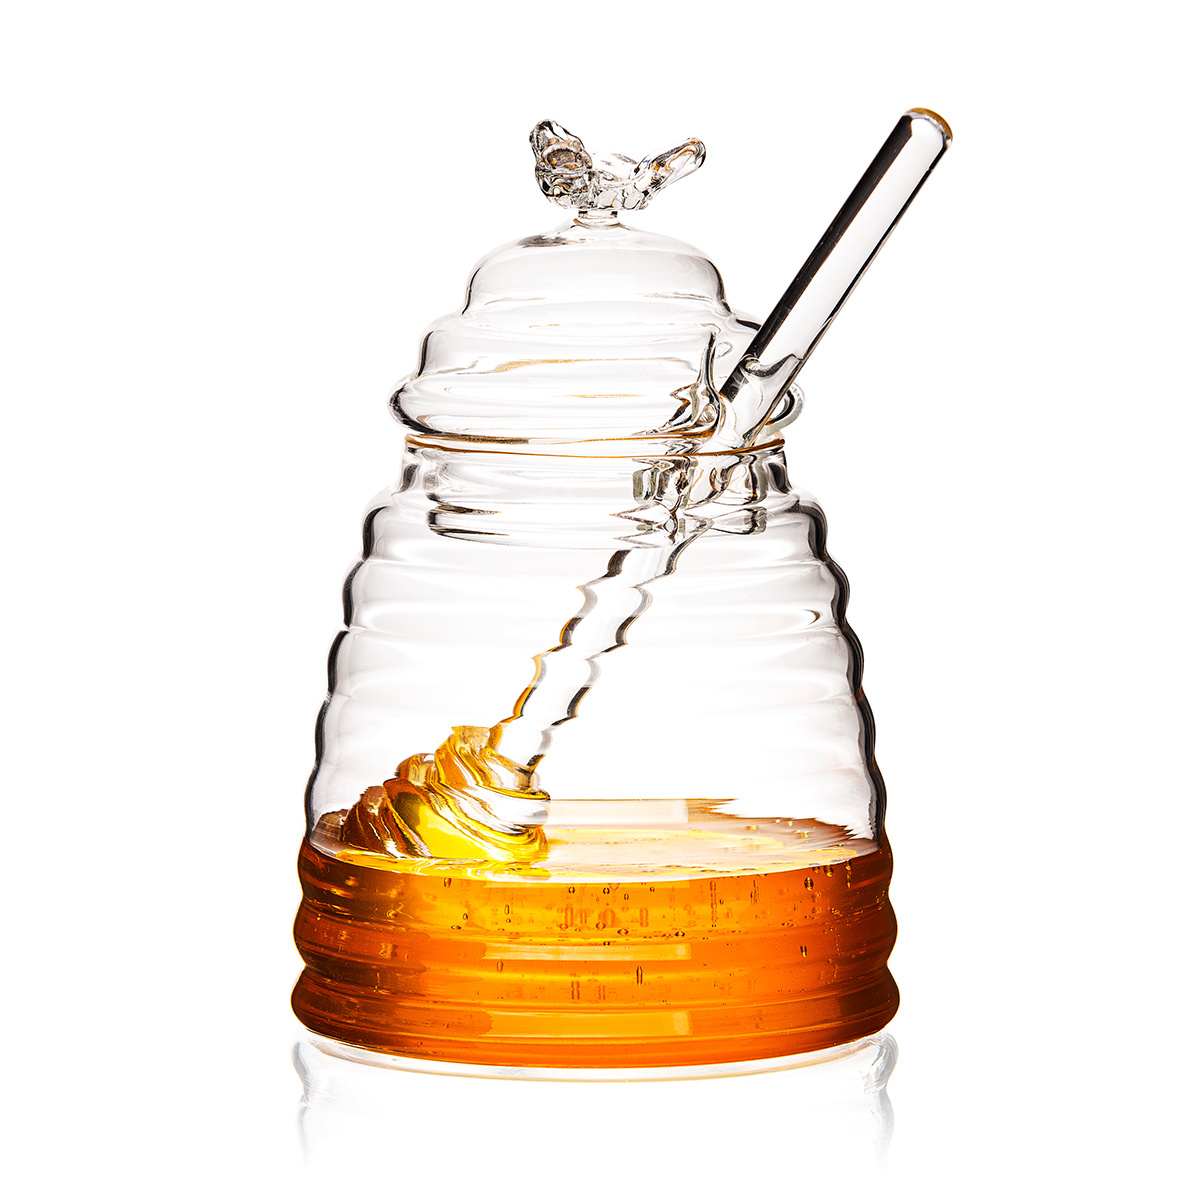 4Home Skleněná dóza na med Honey